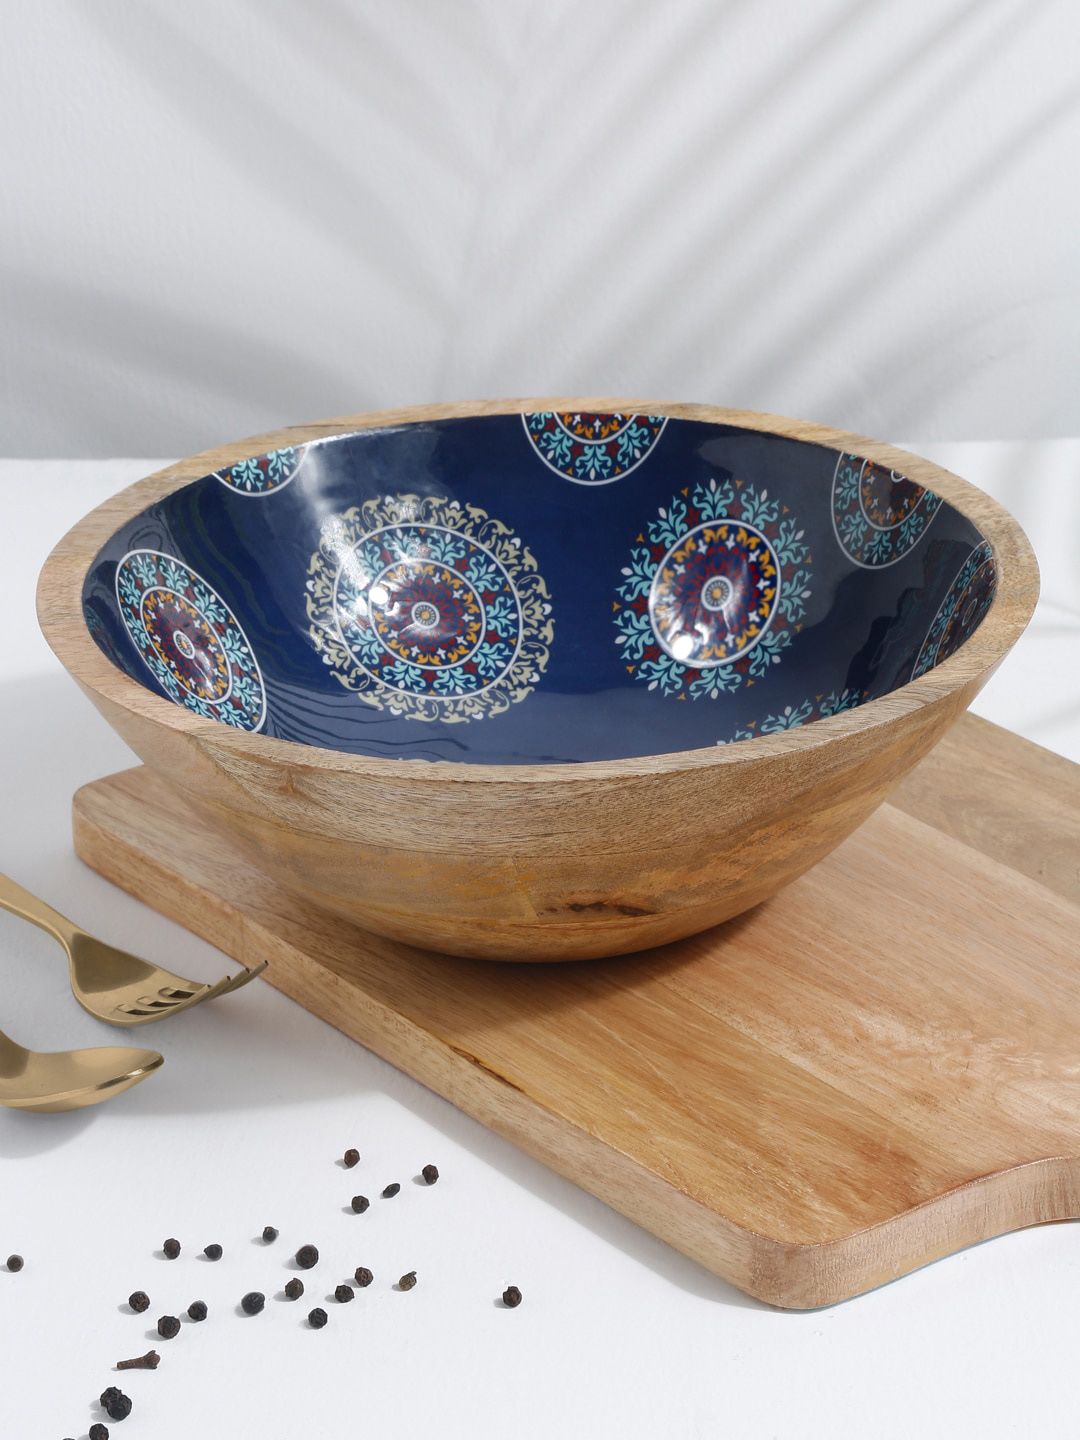 EK BY EKTA KAPOOR Blue & Brown Enamel Printed Wooden Serving Bowl Price in India